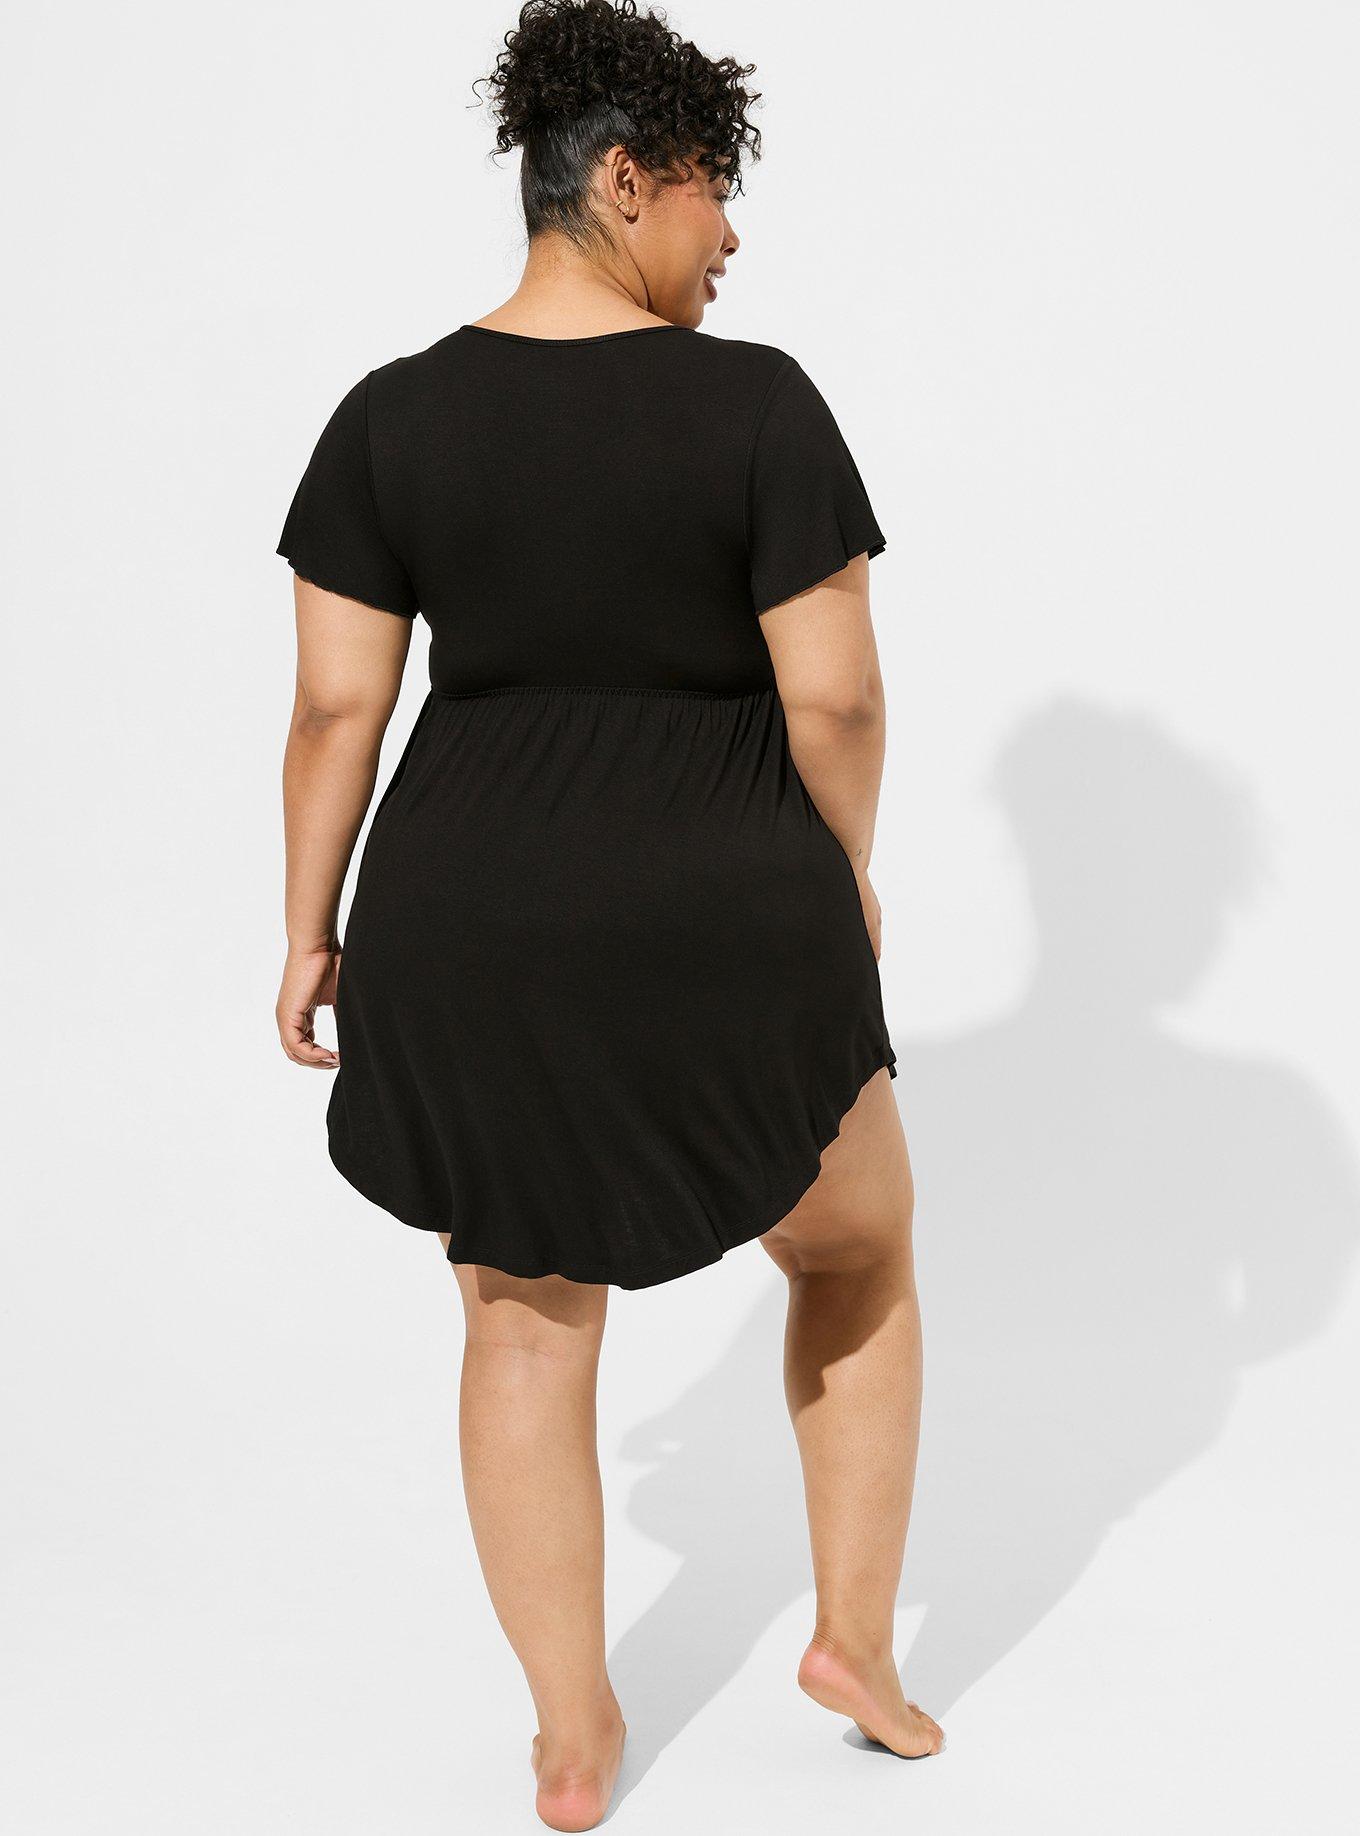 Plus Size - Seamless 360° Smoothing Slip Dress - Torrid